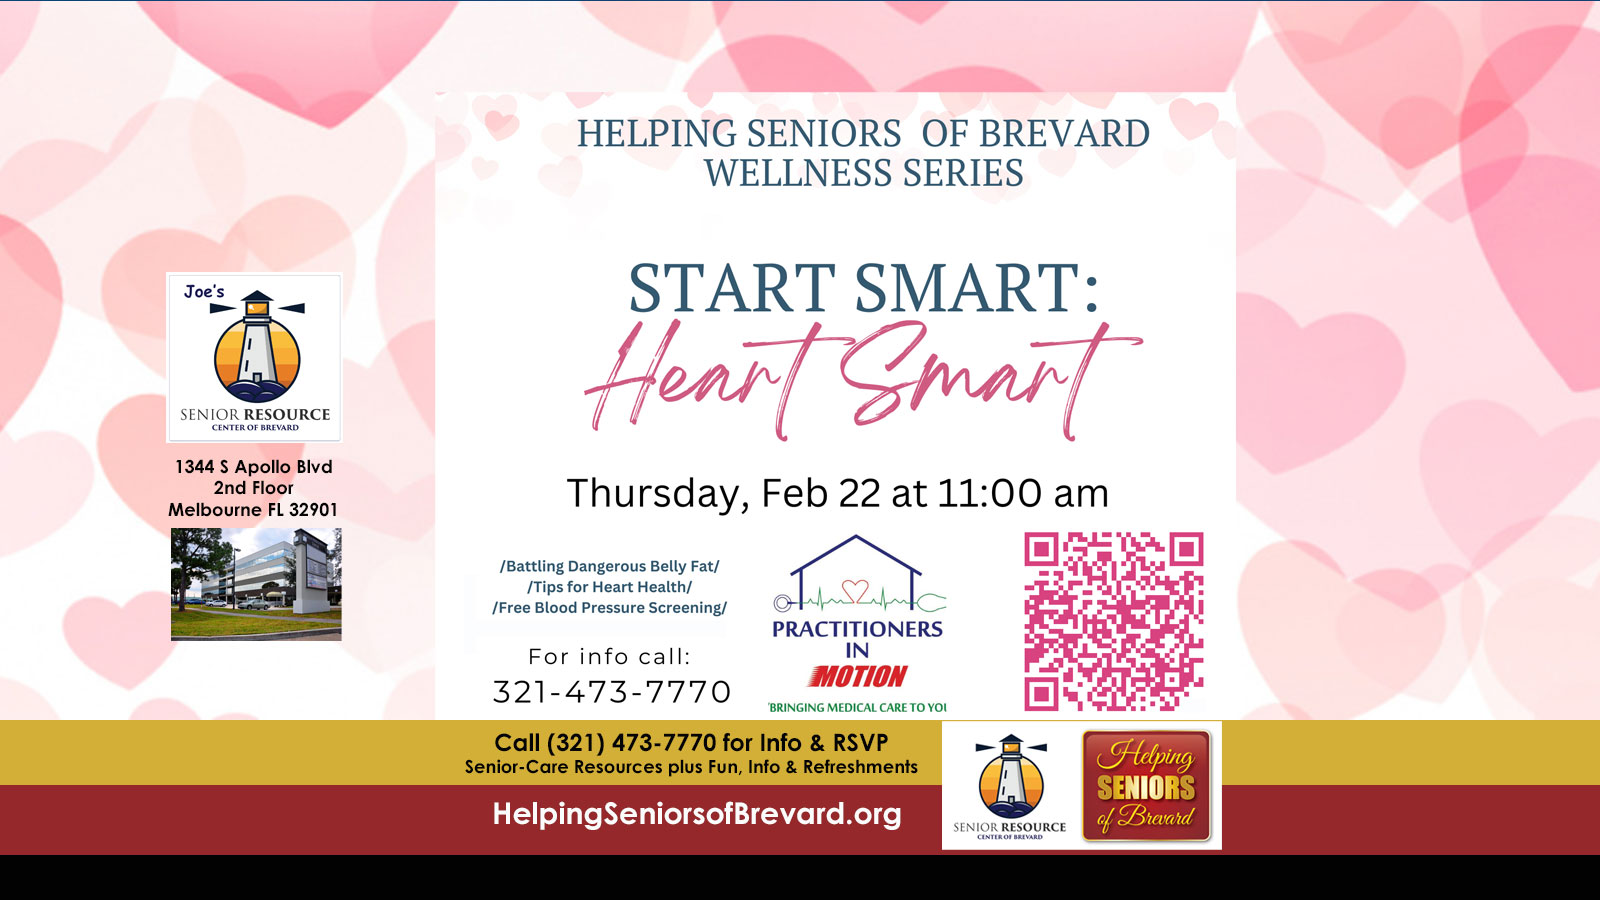 Helping Seniors Heart Smart Wellness Series Event